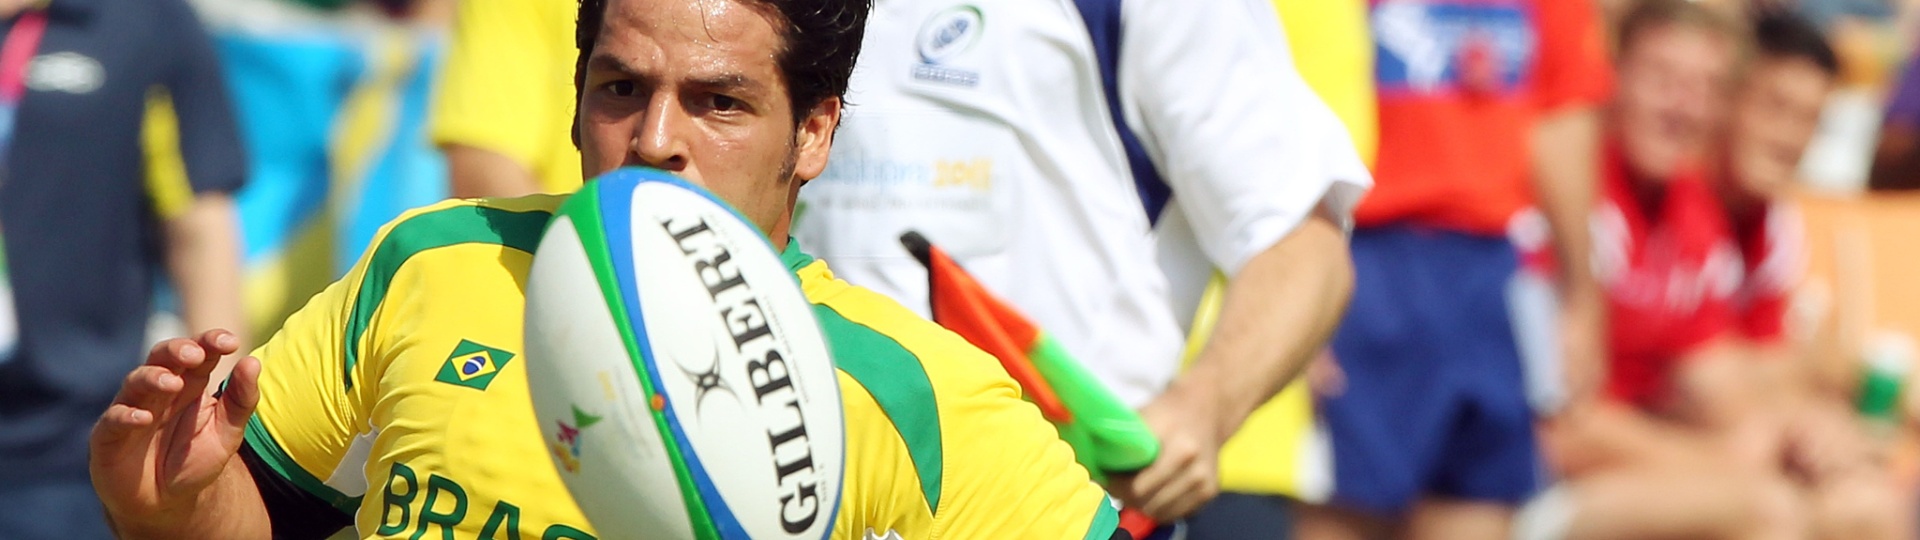 Tanque, jogador da seleção brasileira de rúgbi, durante a derrota para o Canadá na estreia do Pan (29/10/2011)